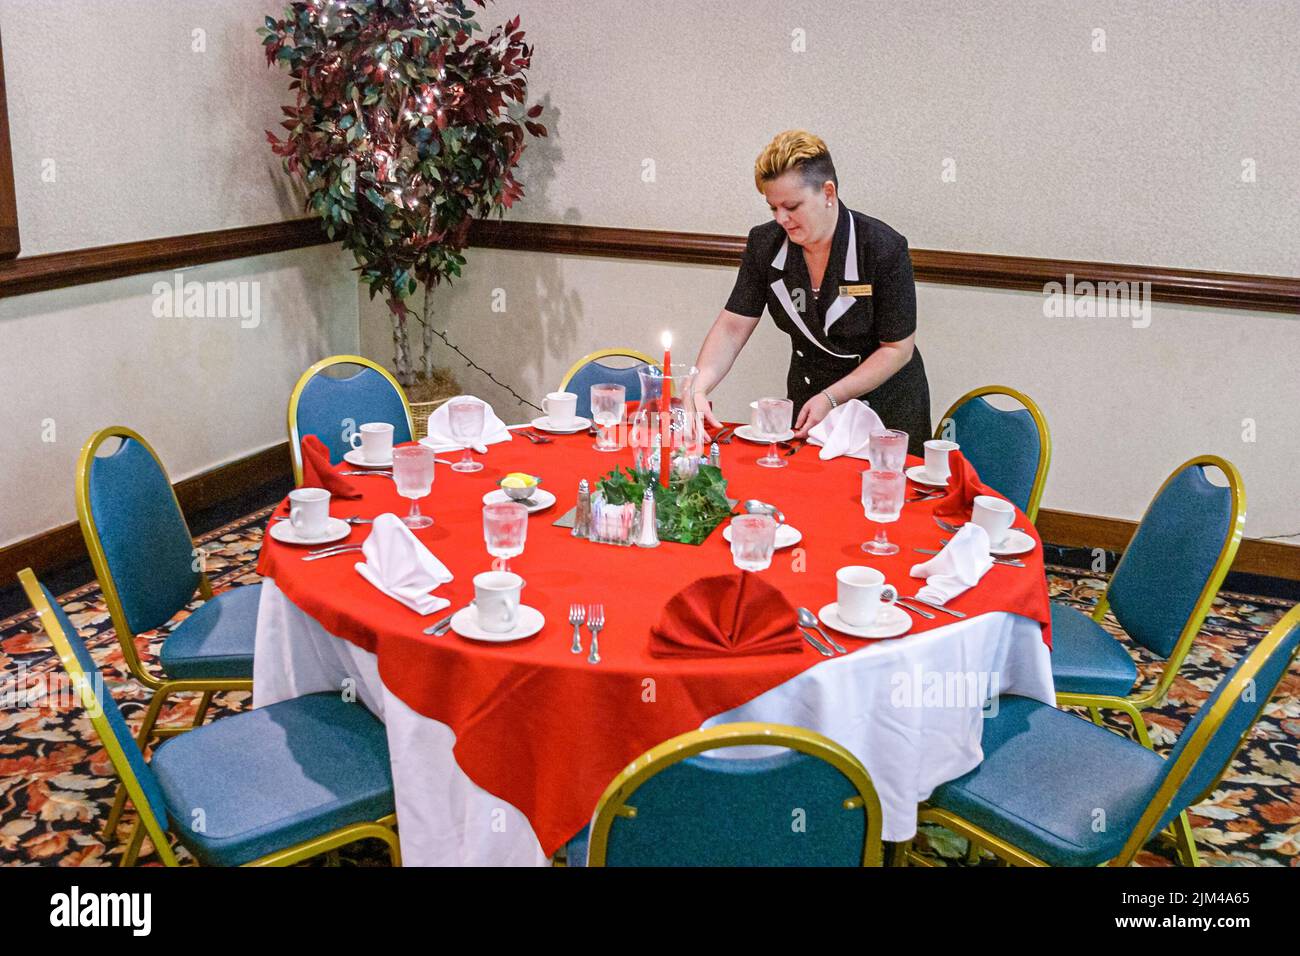 Hampton Virginia, Tidewater Gegend, Quality Inn Hotel Hotels Unterkunft Inn Konferenzraum Housekeeping Tisch Frau, Menschen Person Szene auf einem Foto Stockfoto